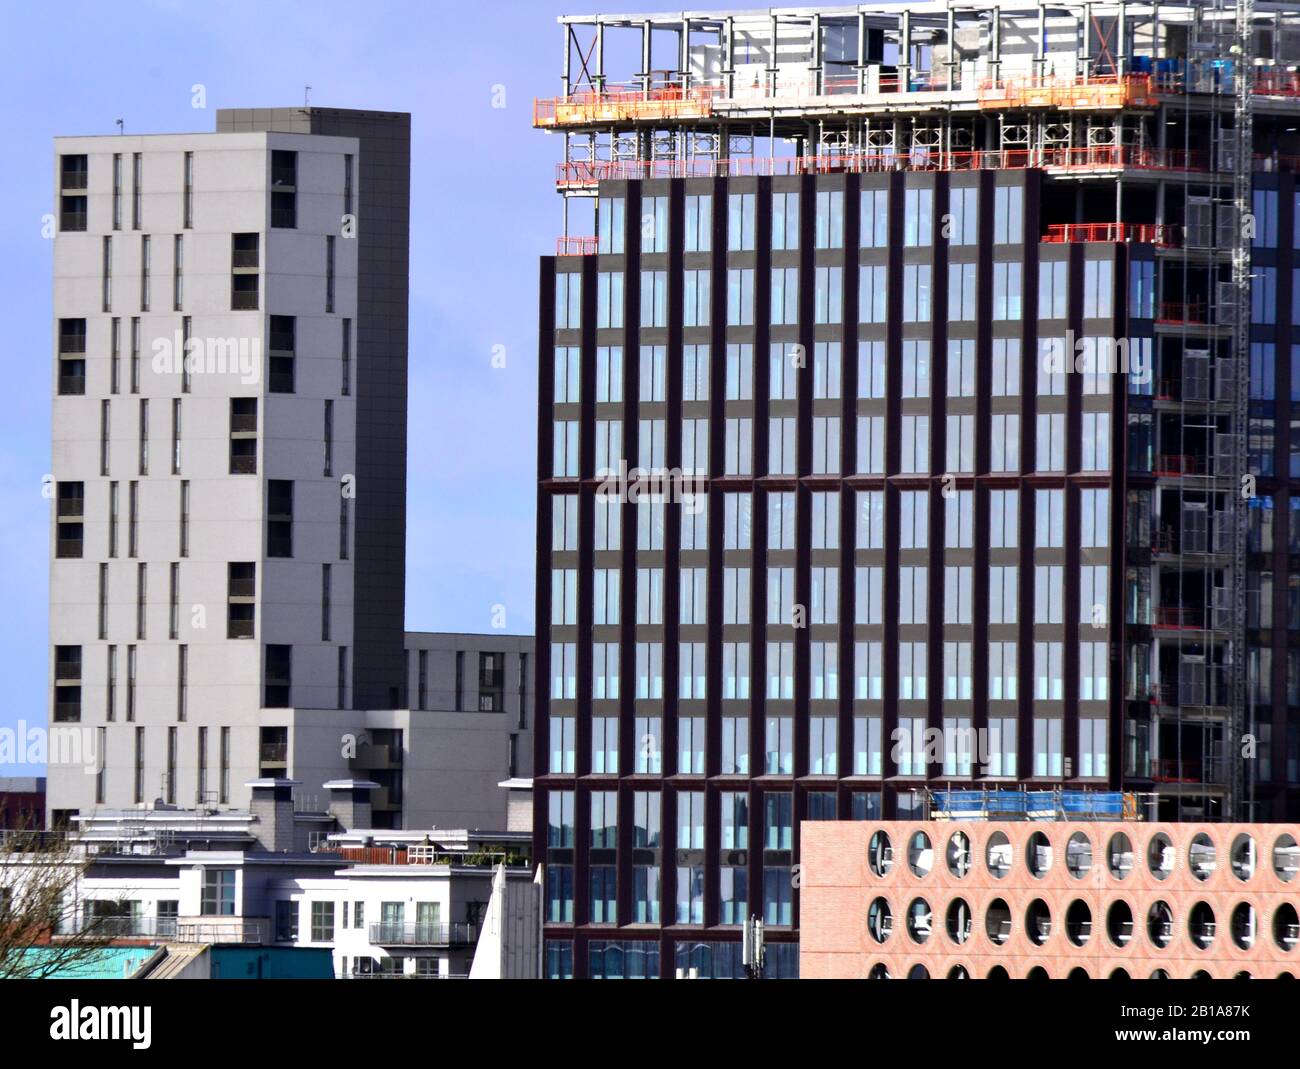 Hochhäuser, darunter eines im Bau, im Zentrum von Manchester, Großbritannien, gegen einen blauen Himmel. Stockfoto